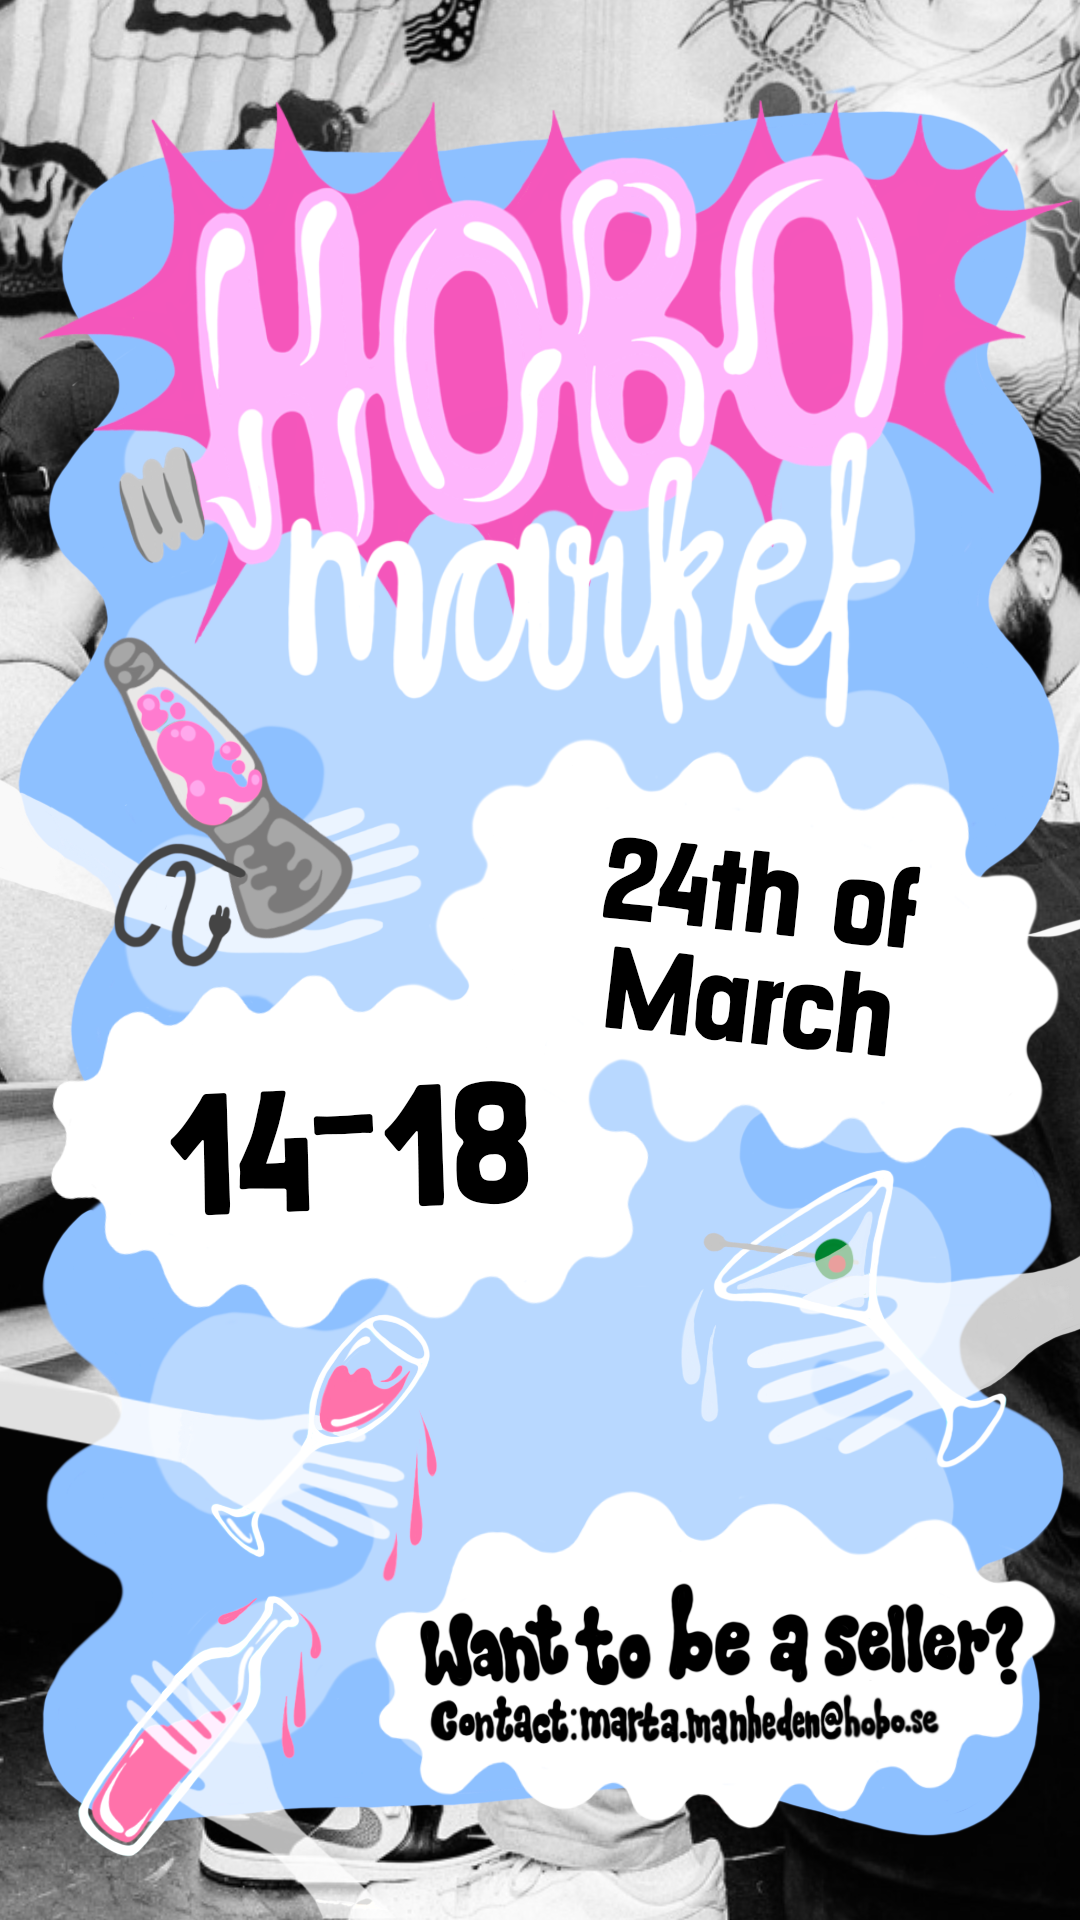 hobo market 24 march